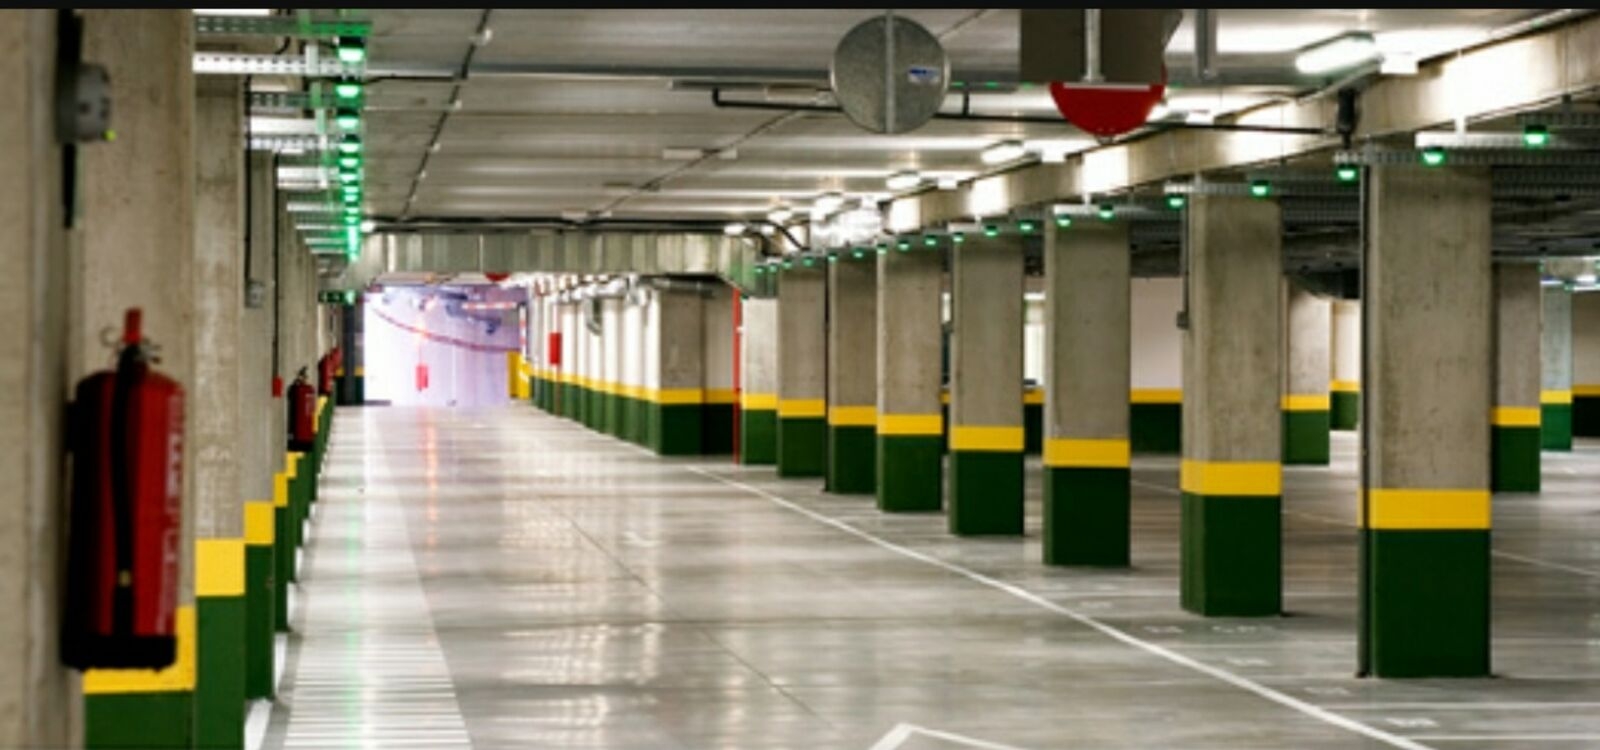 En el año 2008, se decidió construir en Villalba un parking subterráneo que atravesara la zona céntrica y más transitada de la ciudad y que, según el PP y el…